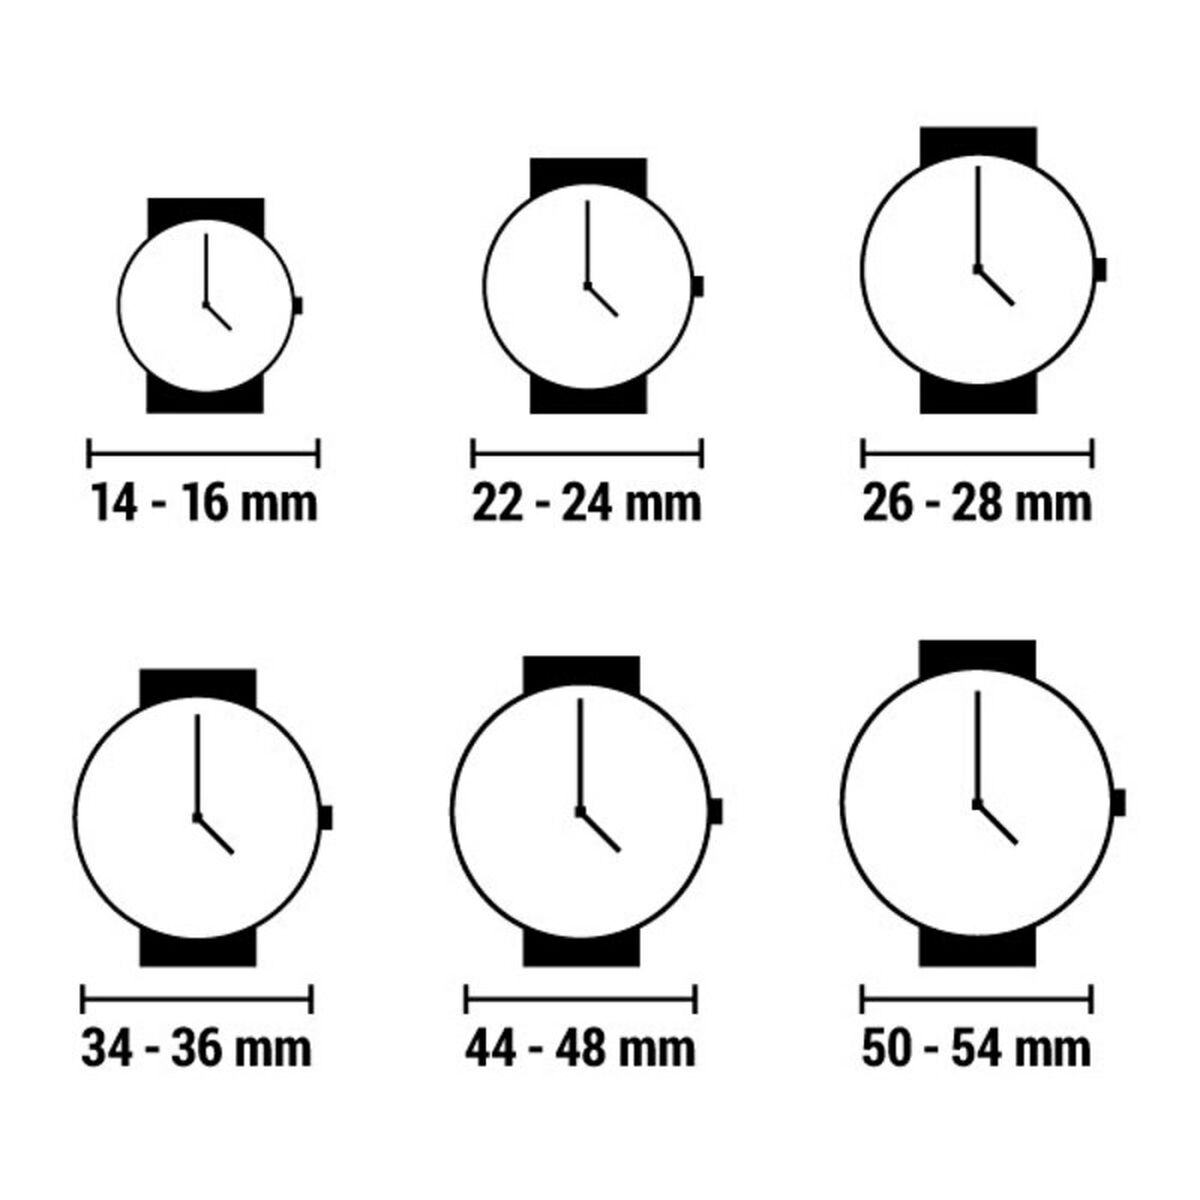 Horloge Dames Radiant ra404207 (Ø 36 mm)